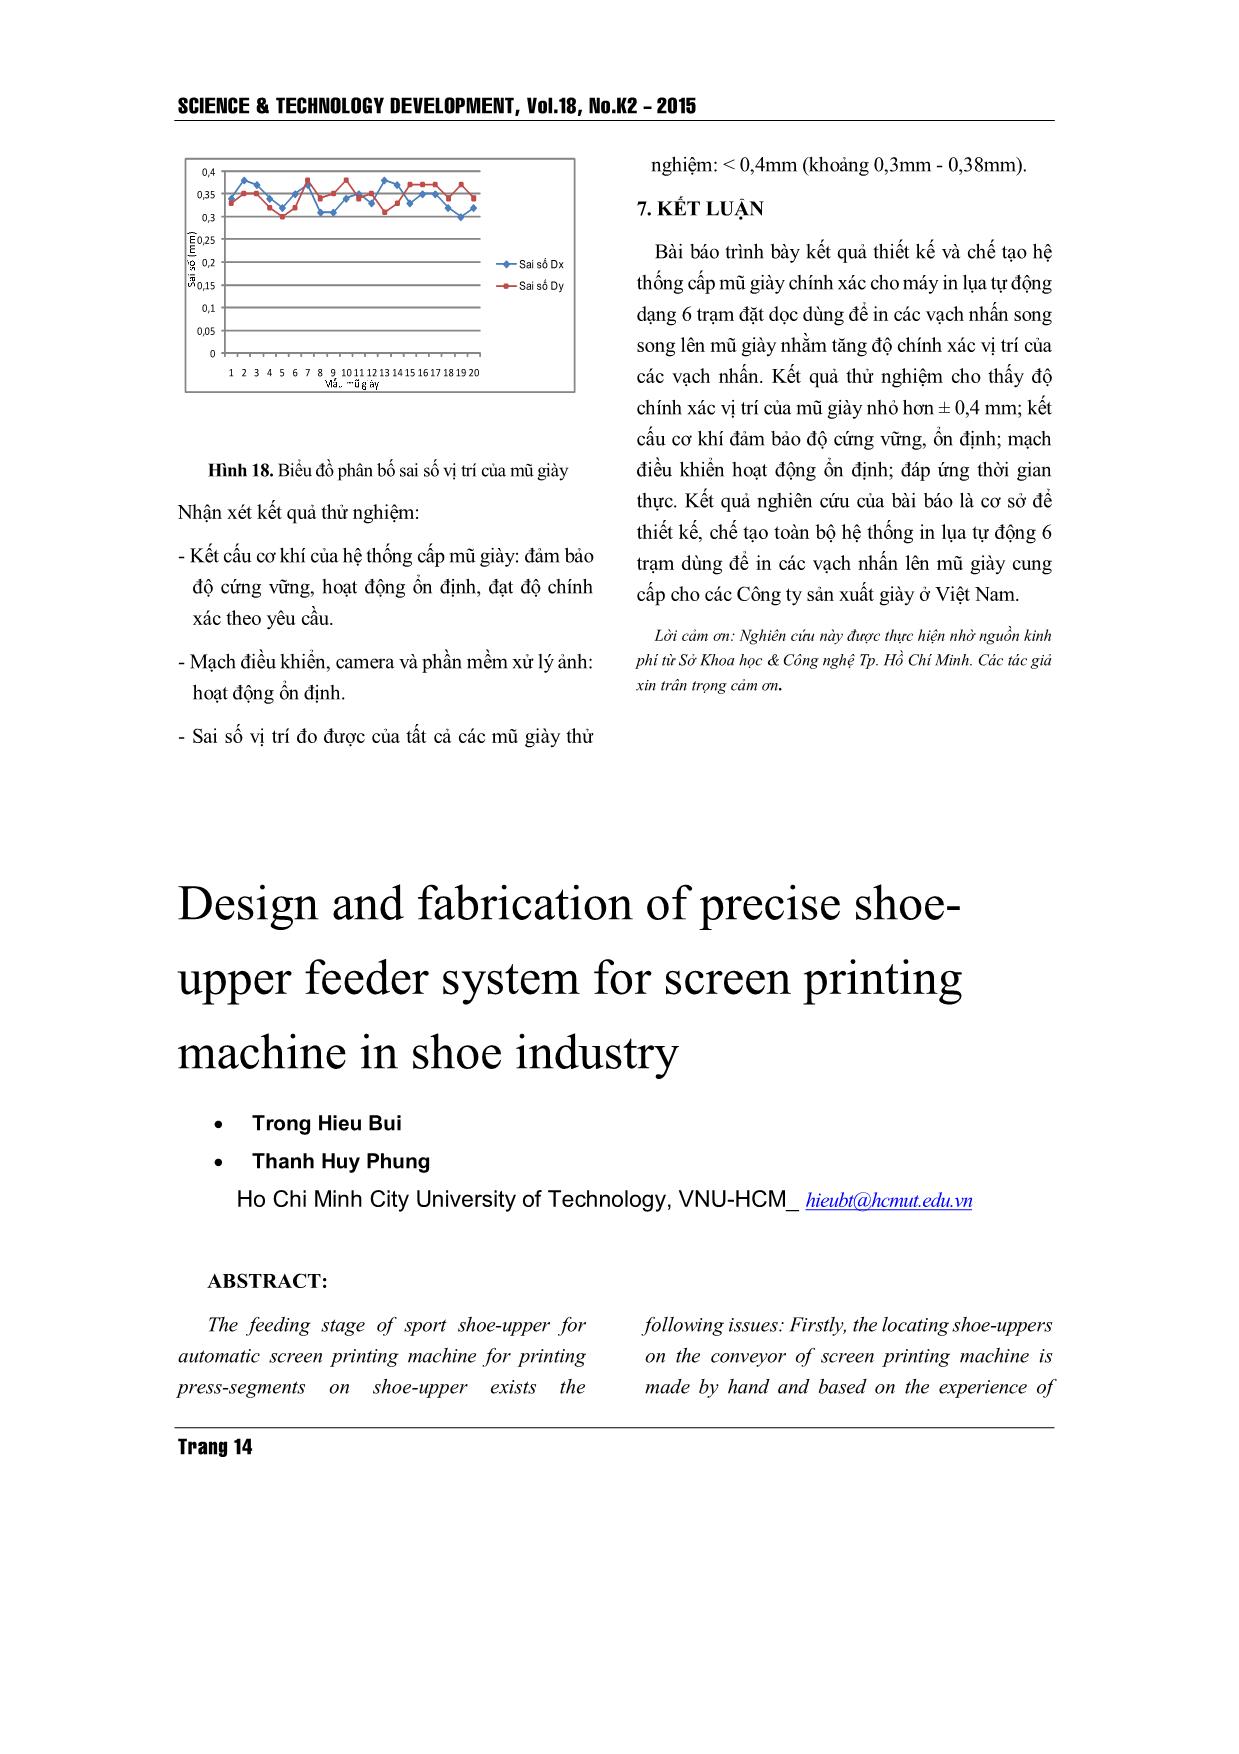 Thiết kế và chế tạo hệ thống cấp mũ giày chính xác cho máy in lụa trong công nghiệp giày trang 10